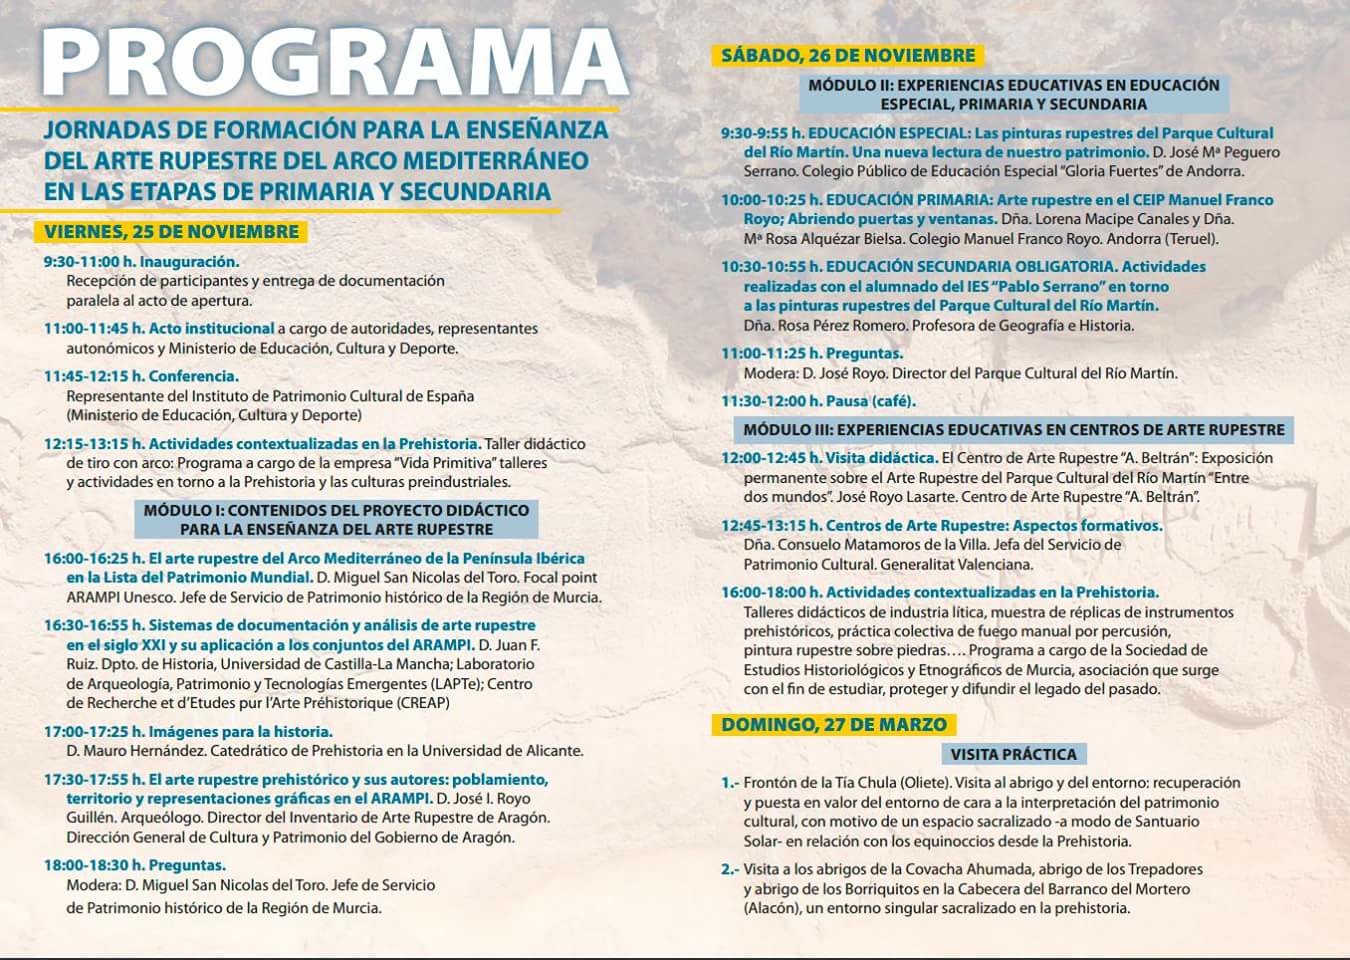 Programa de las Jornadas de Formación para la Enseñanza del Arte Rupestre del Arco Mediterráneo en Primaria y Secundaria